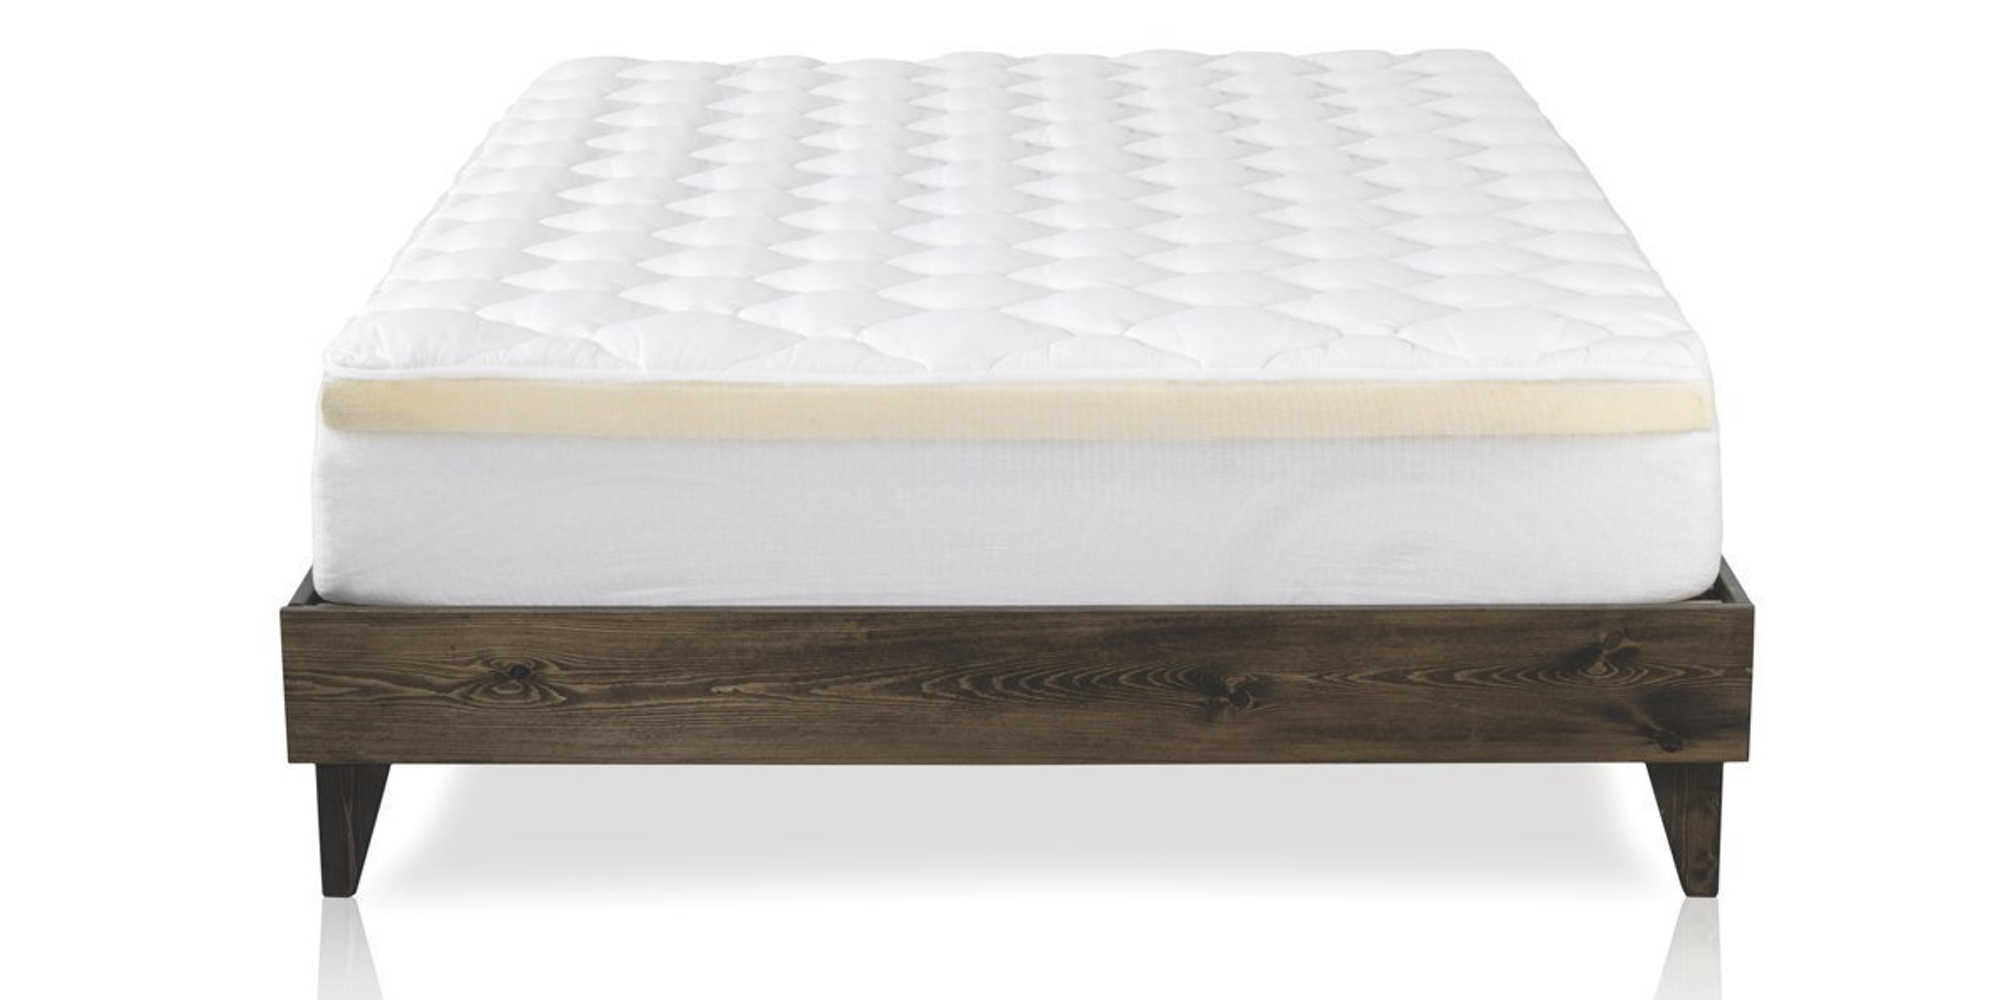 thick mattress pad reviews